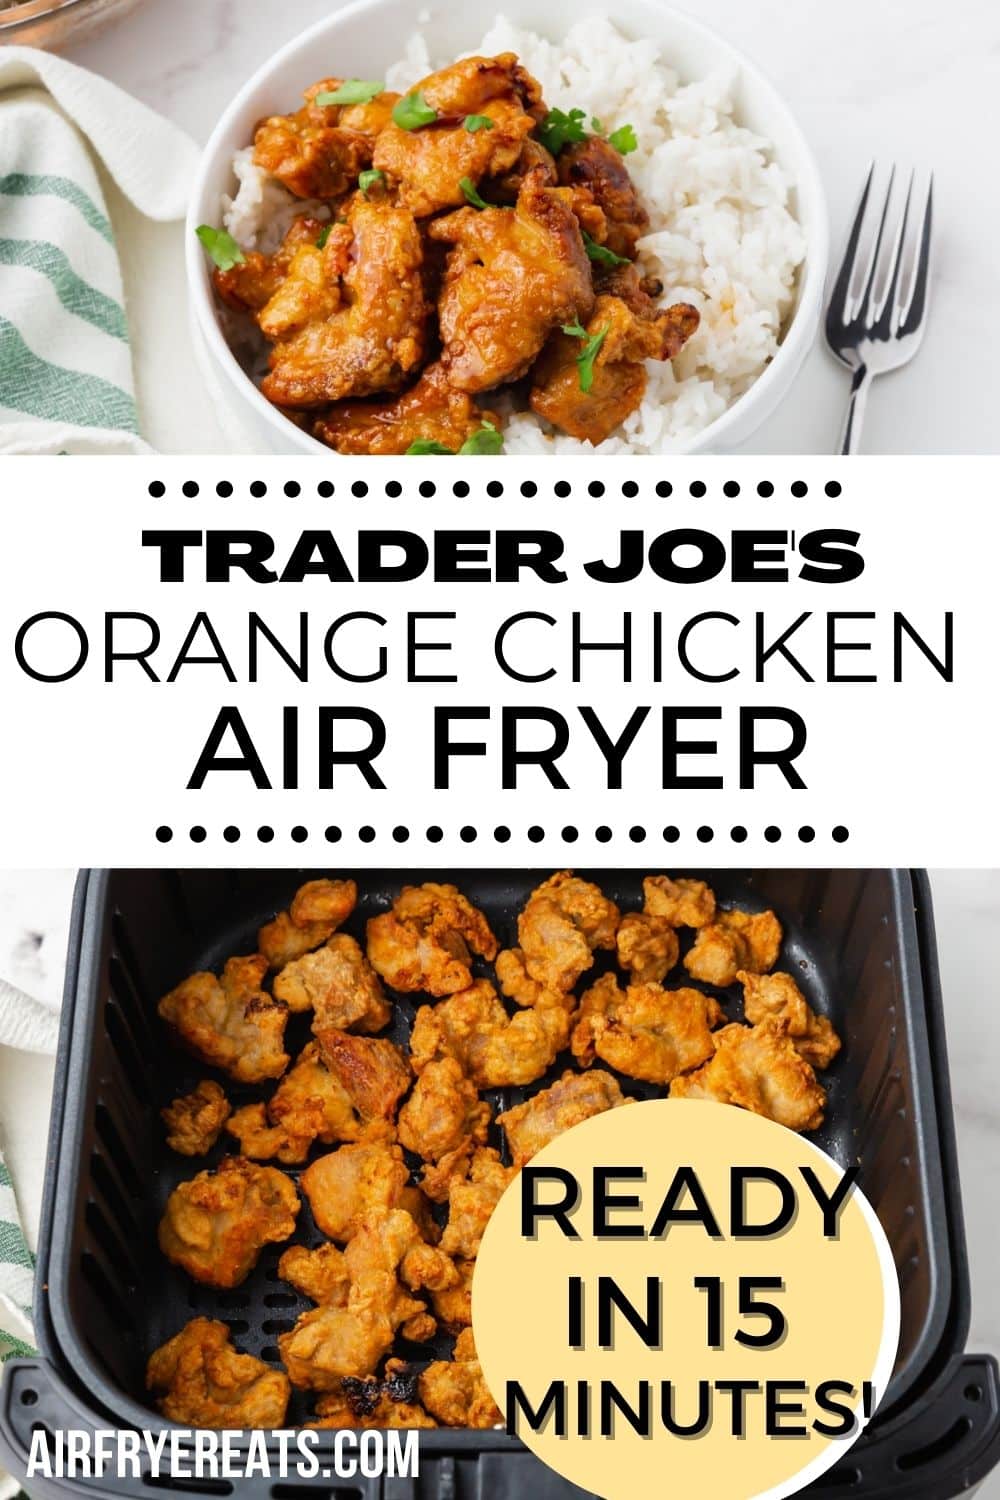 two photos of orange chicken in air fryer. Text overlay says "trader joe's orange chicken air fryer"